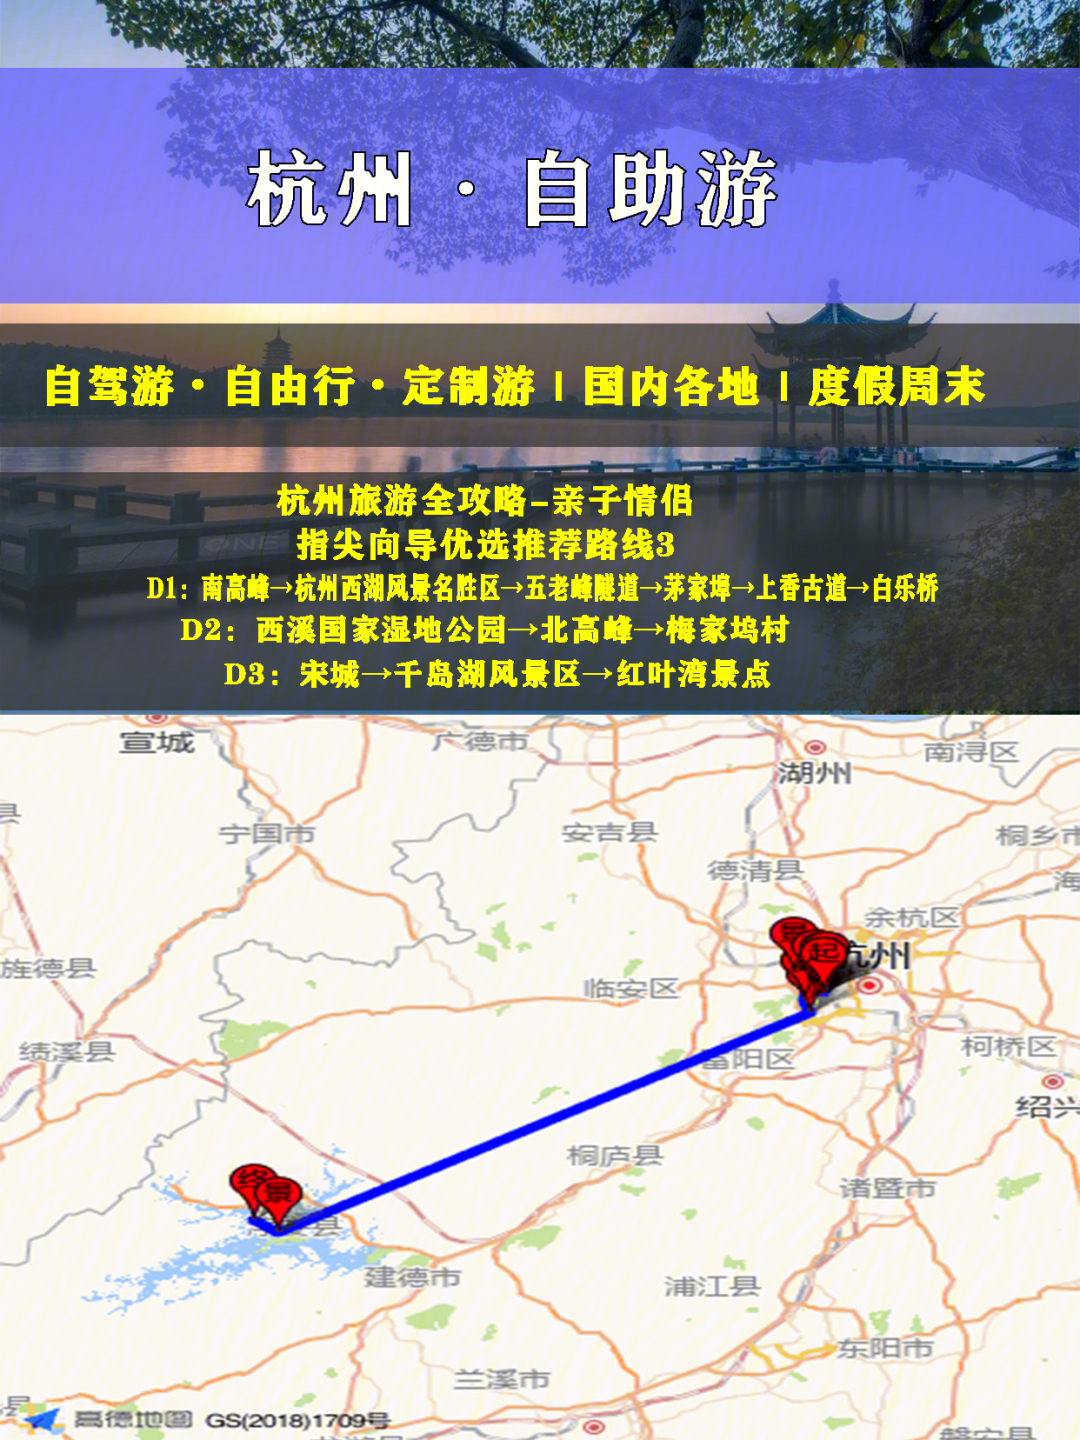 95● 路线1d1:南高峰→杭州西湖→五老峰隧道→茅家埠→上香古道